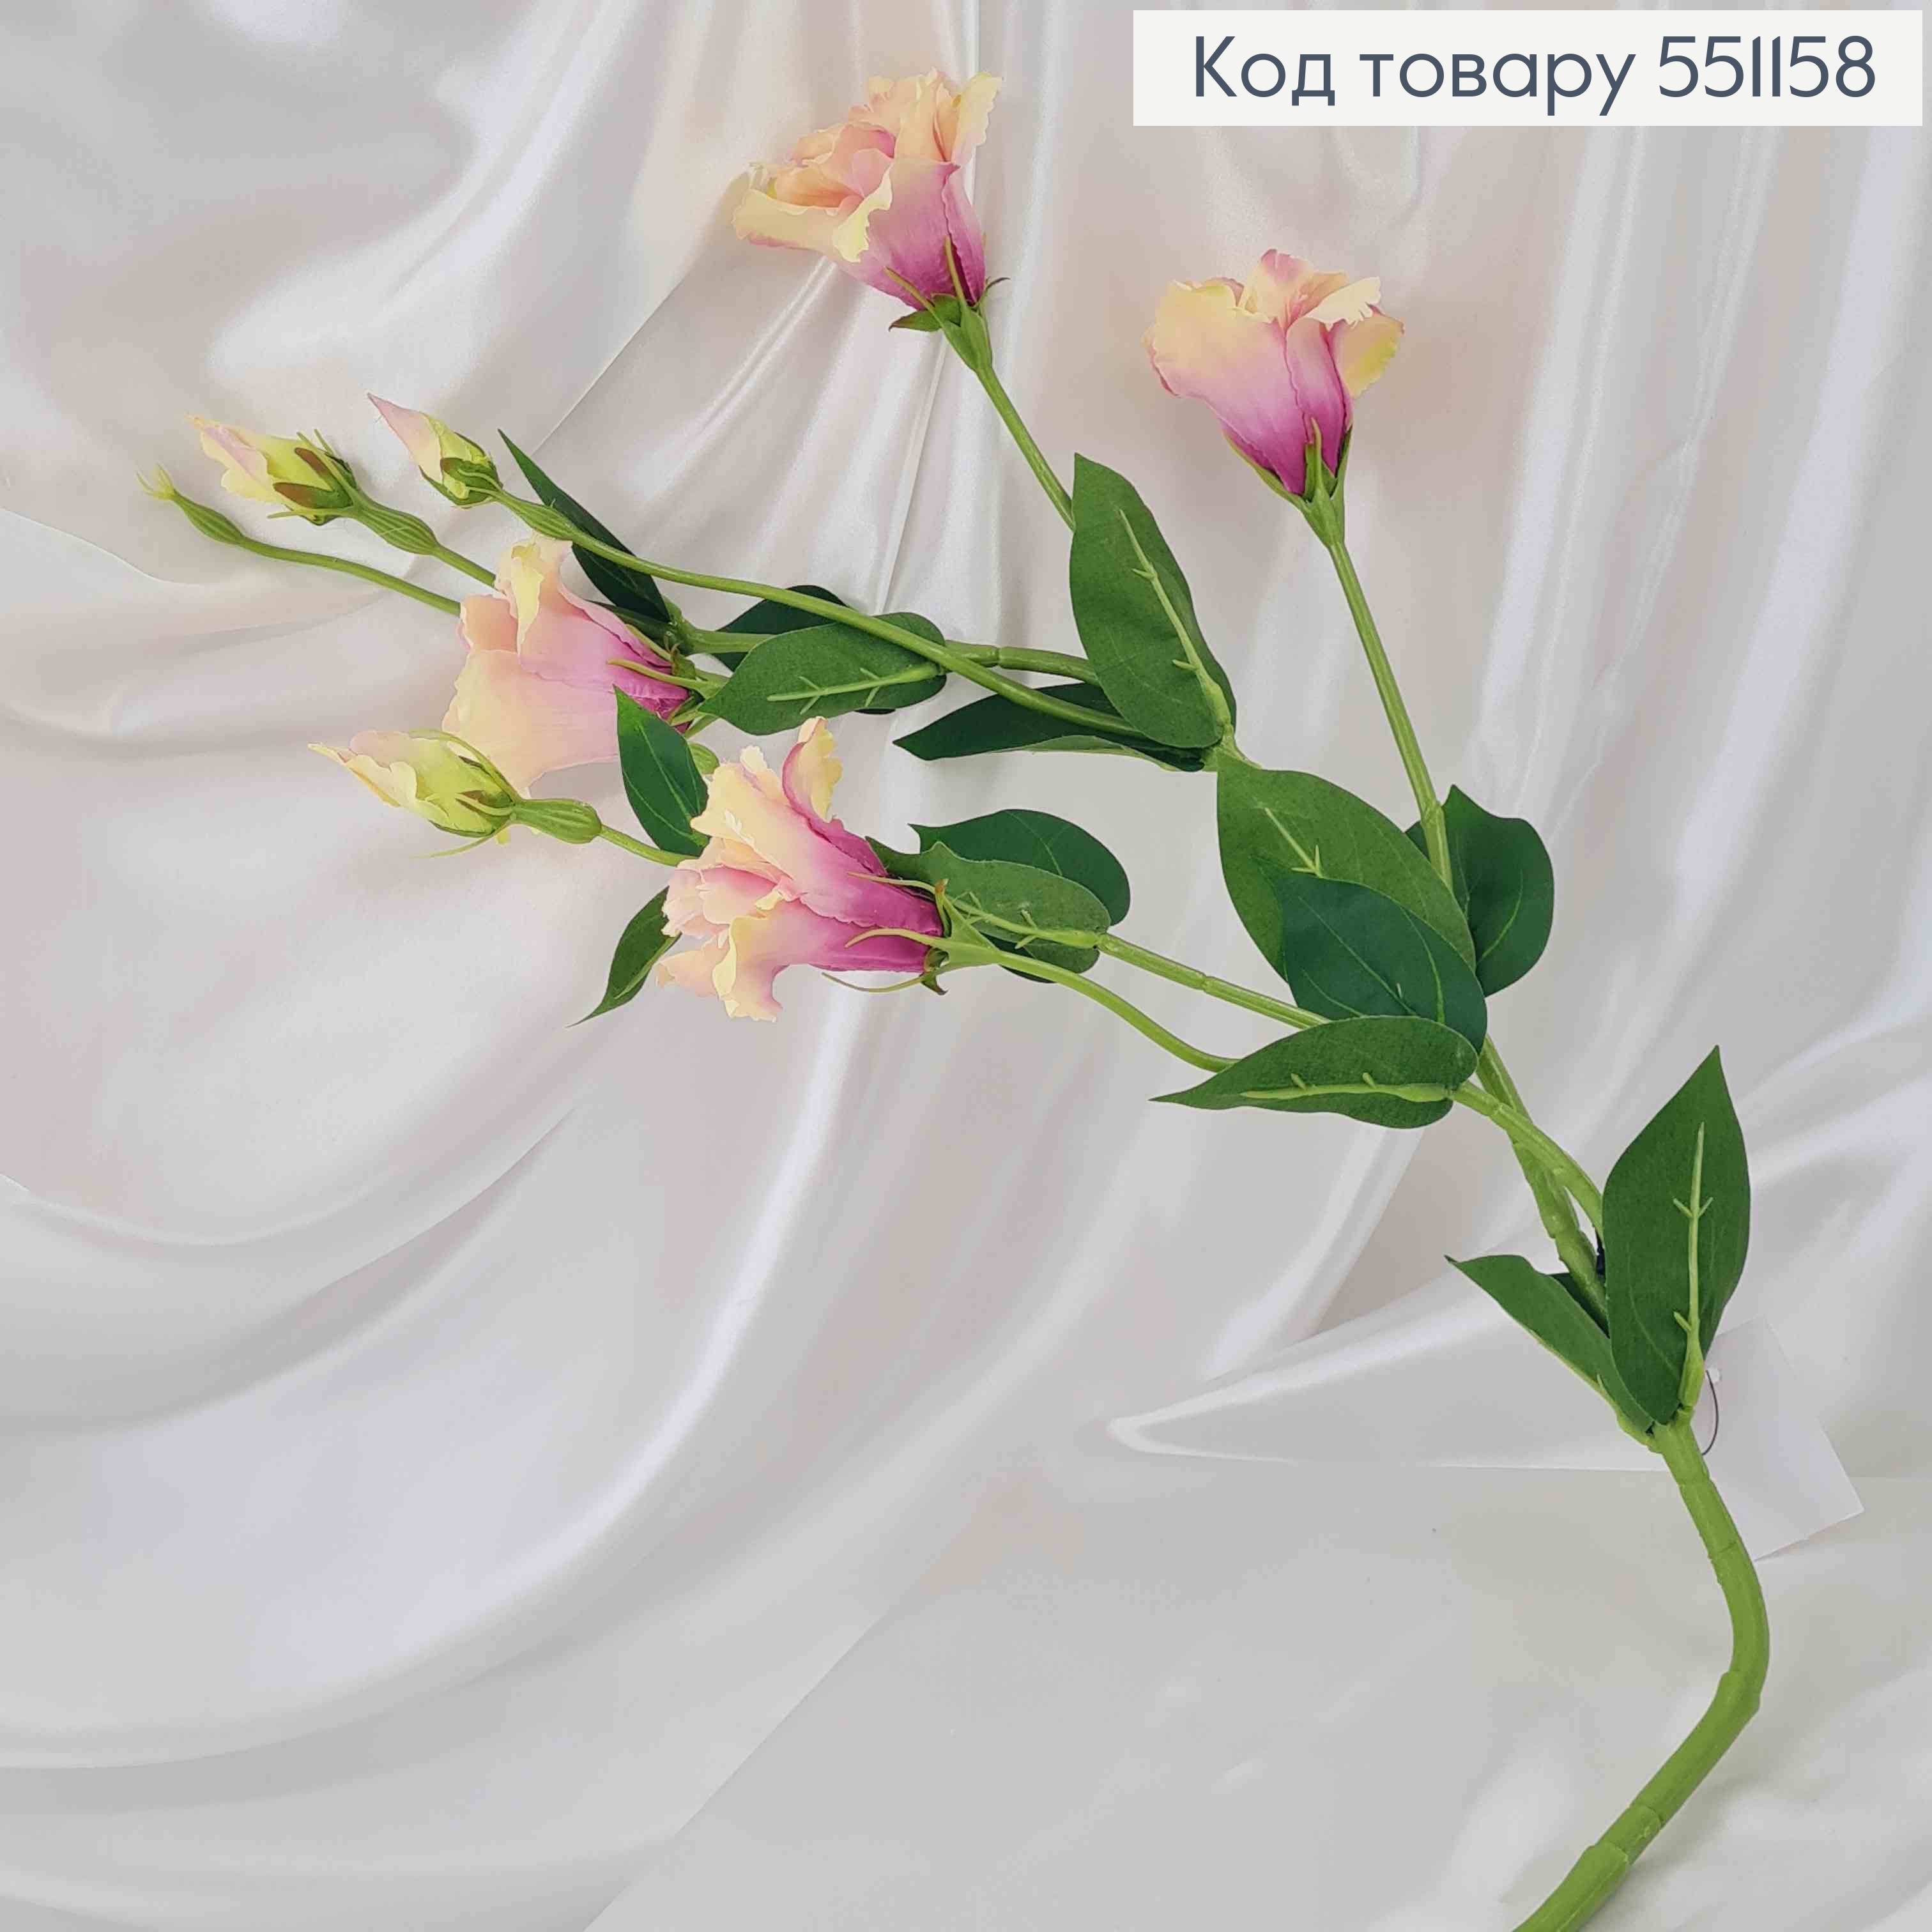 Искусственный цветок Эустомы, МОЛОЧНО-ФИОЛЕТОВАЯ, 4 цветка + 3 бутона, на металлическом стержне, 82см 551158 фото 2